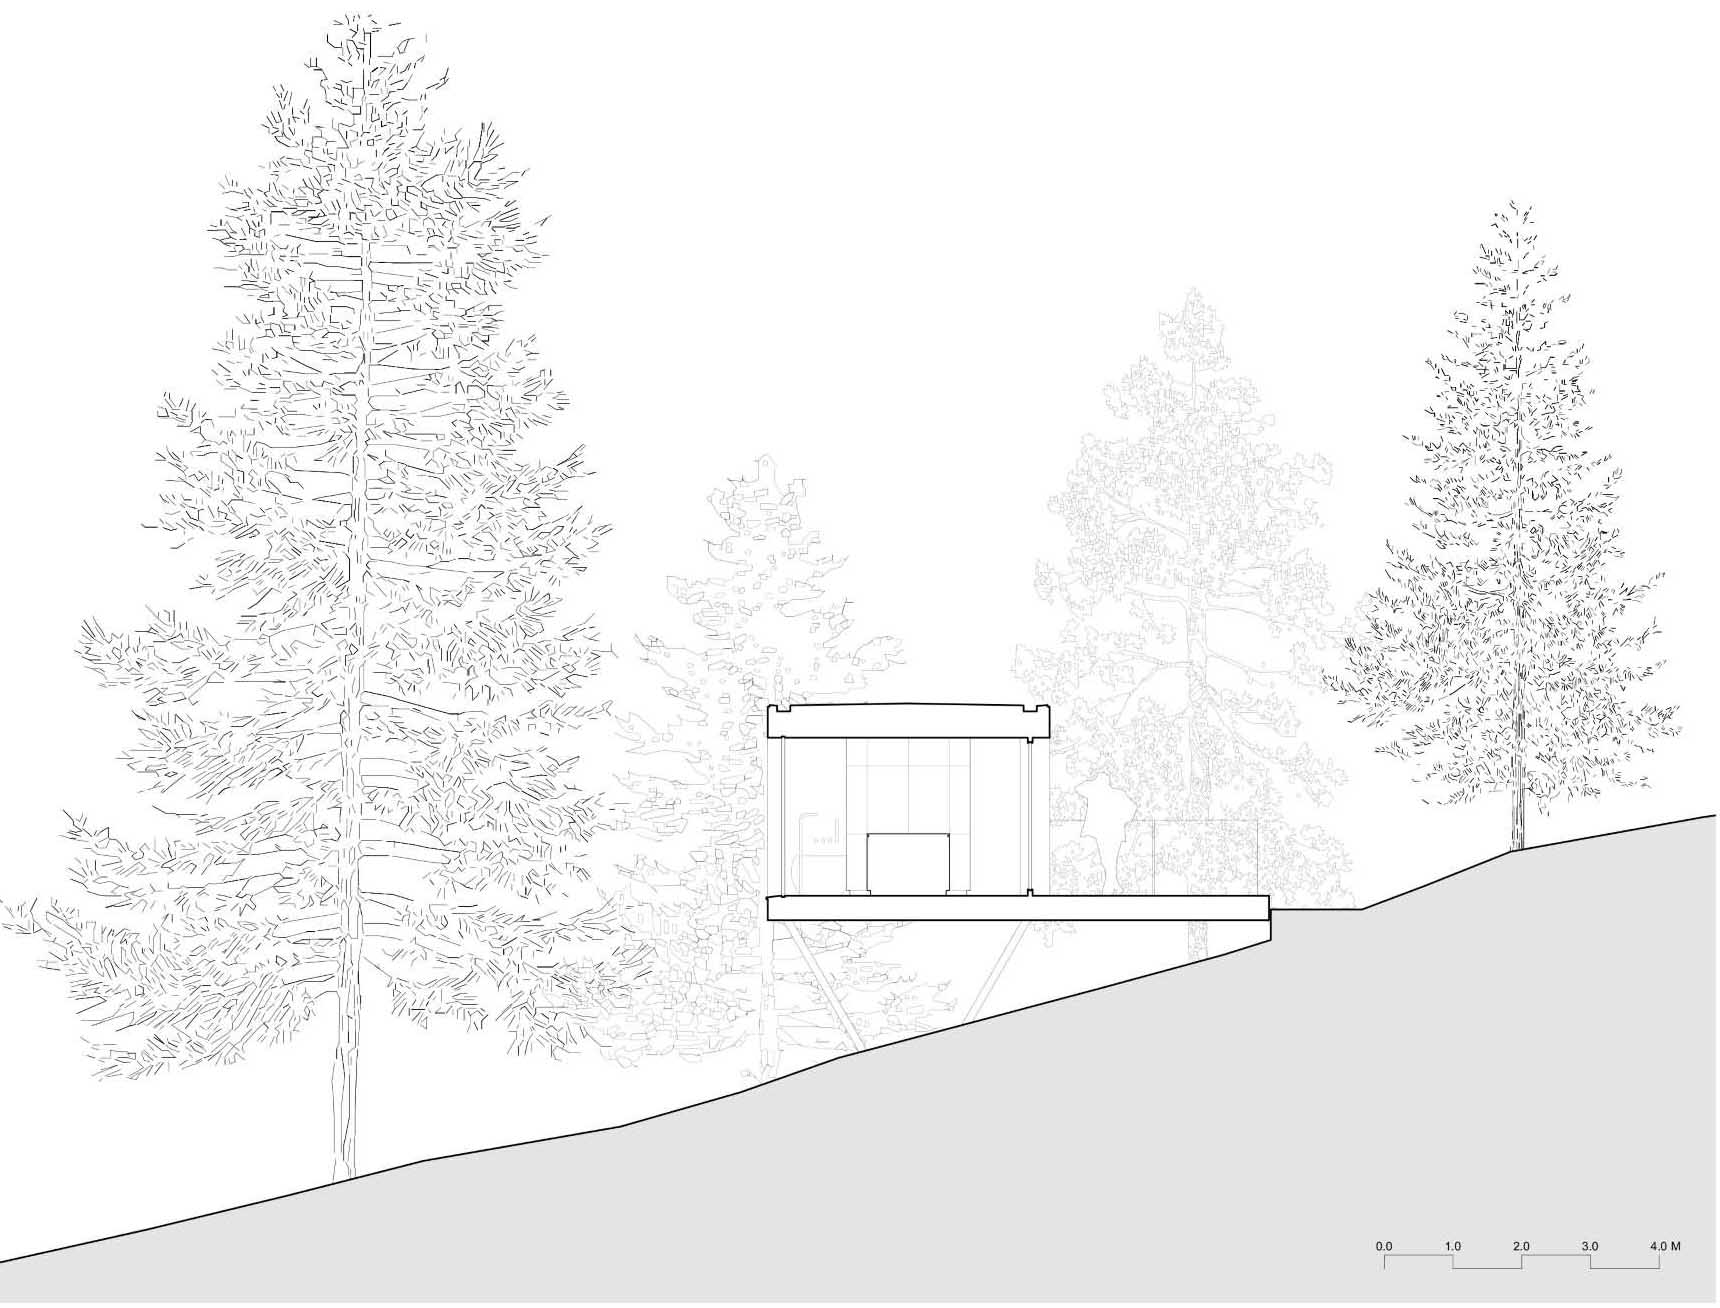 نموداری برای خانه کوچکی که در میان درختان قرار گرفته است.